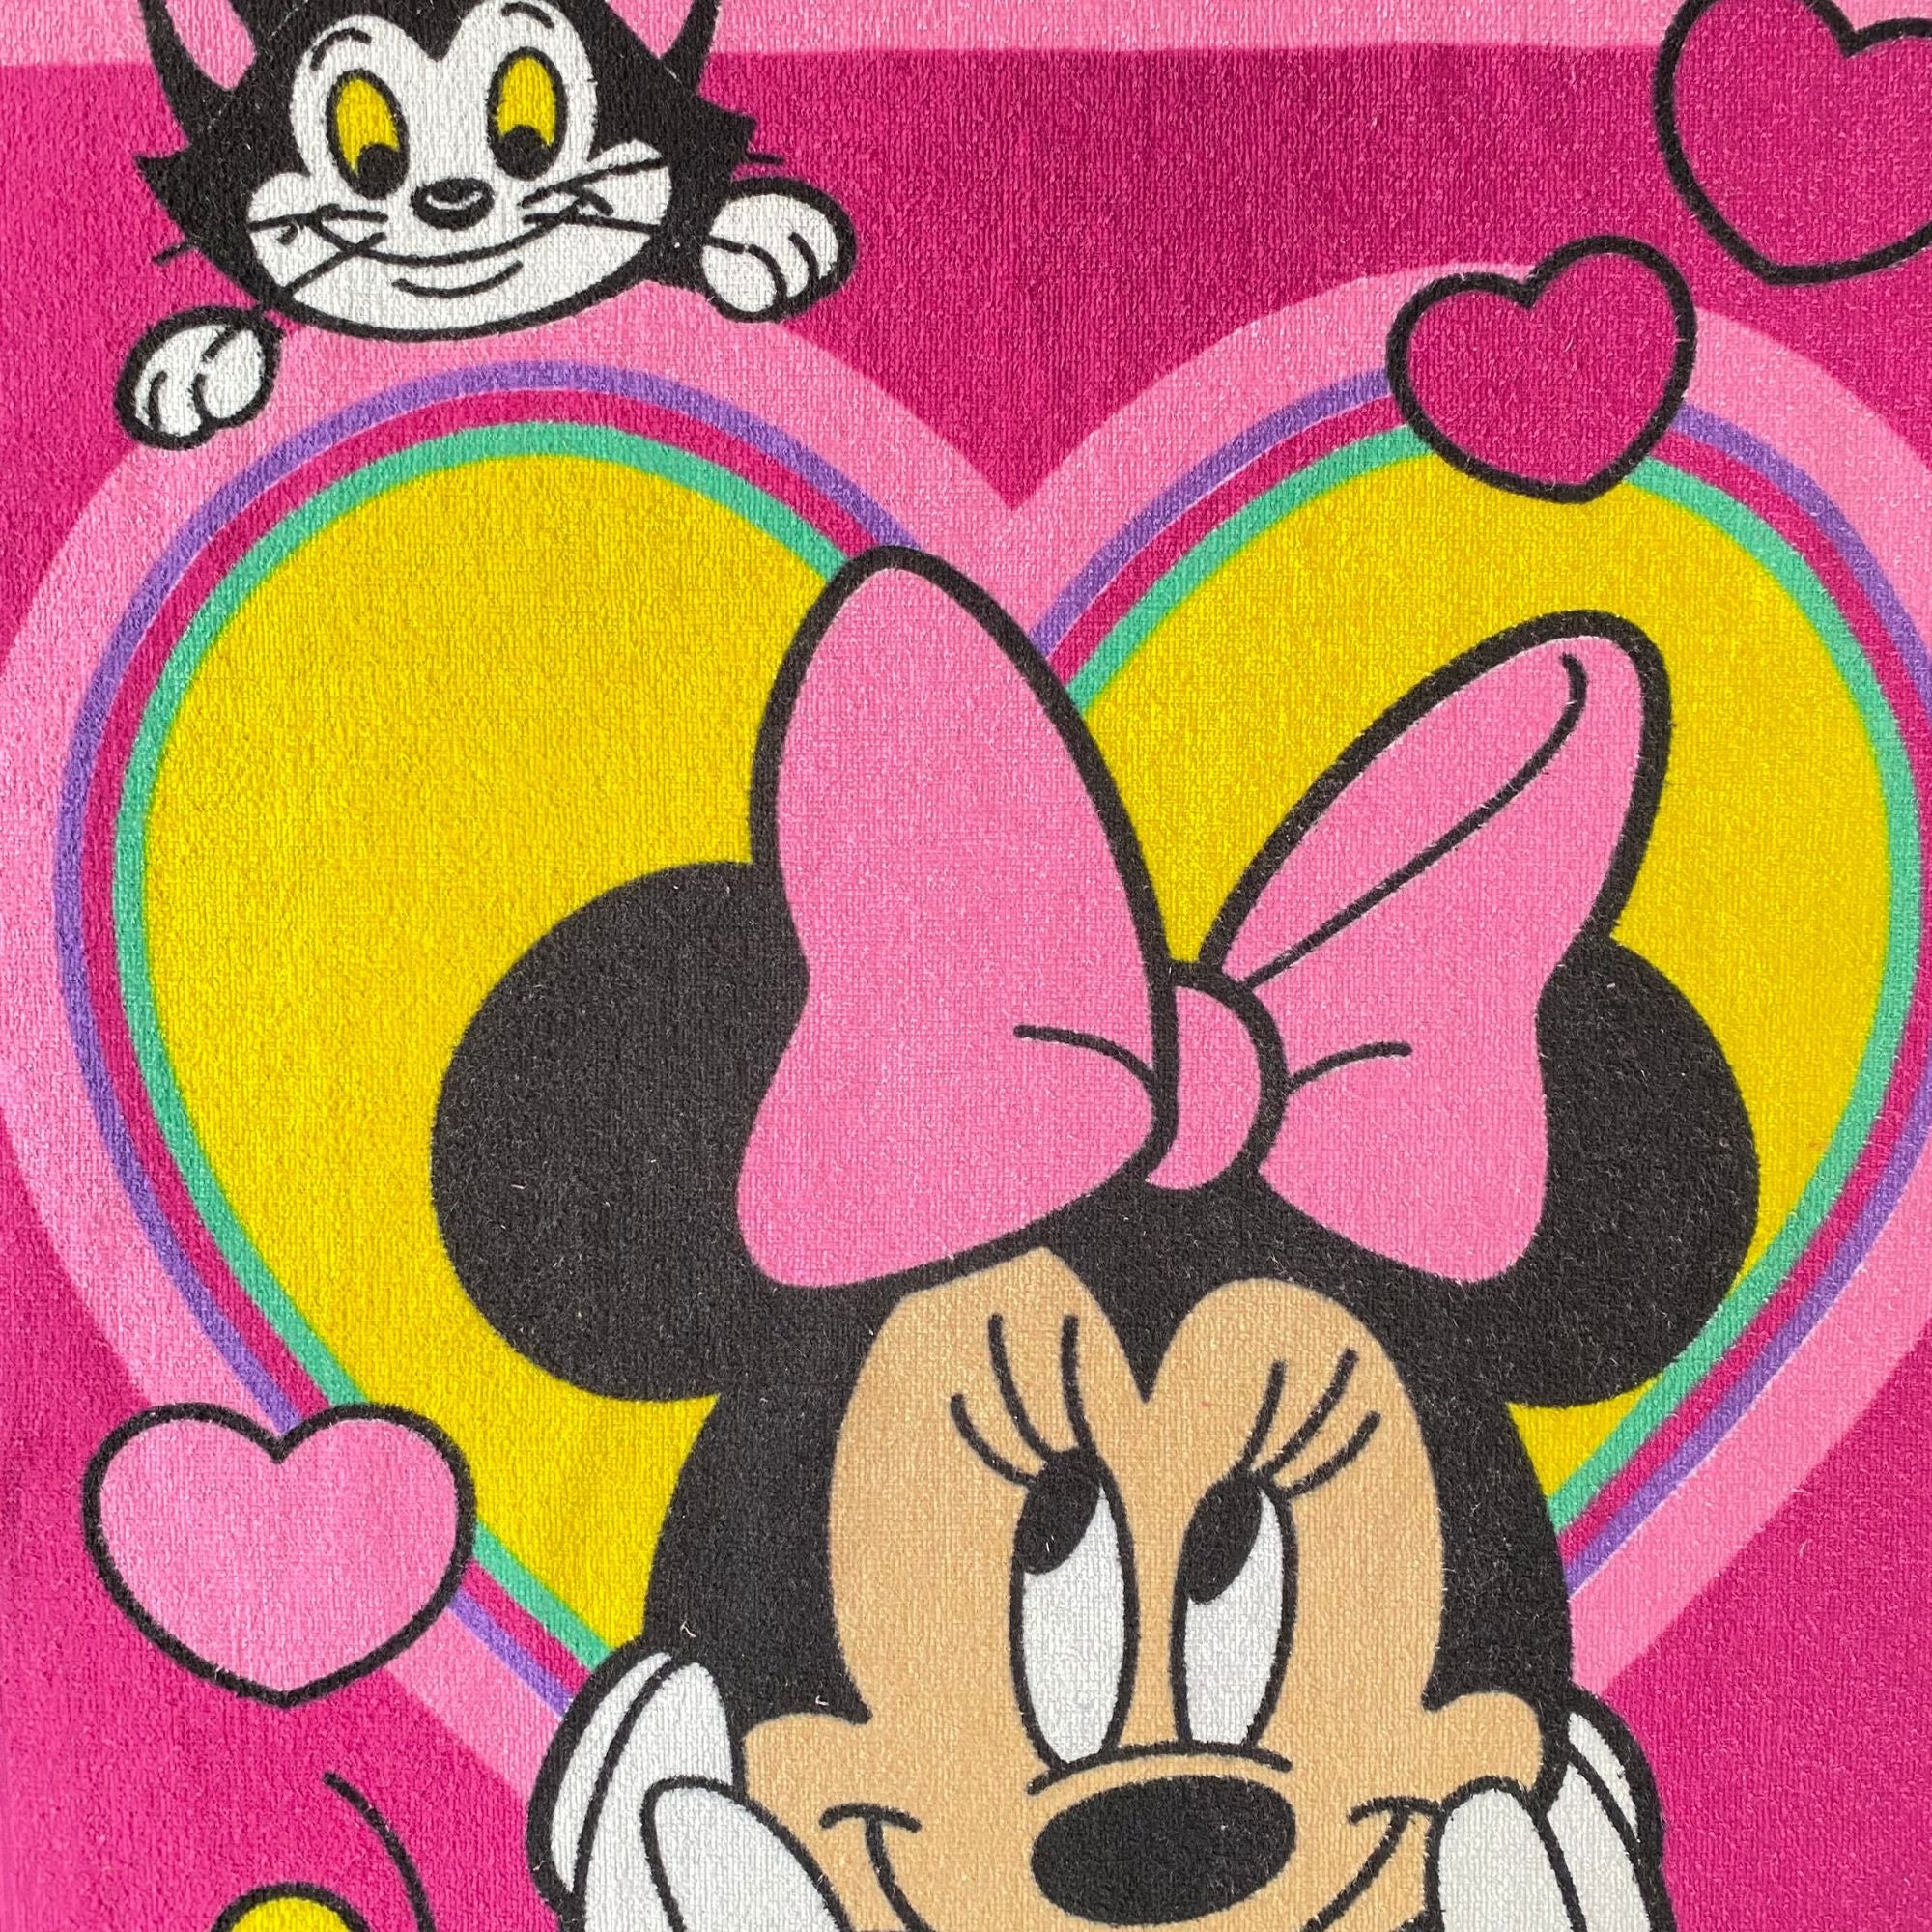 Toalla oficial de Minnie Mouse.